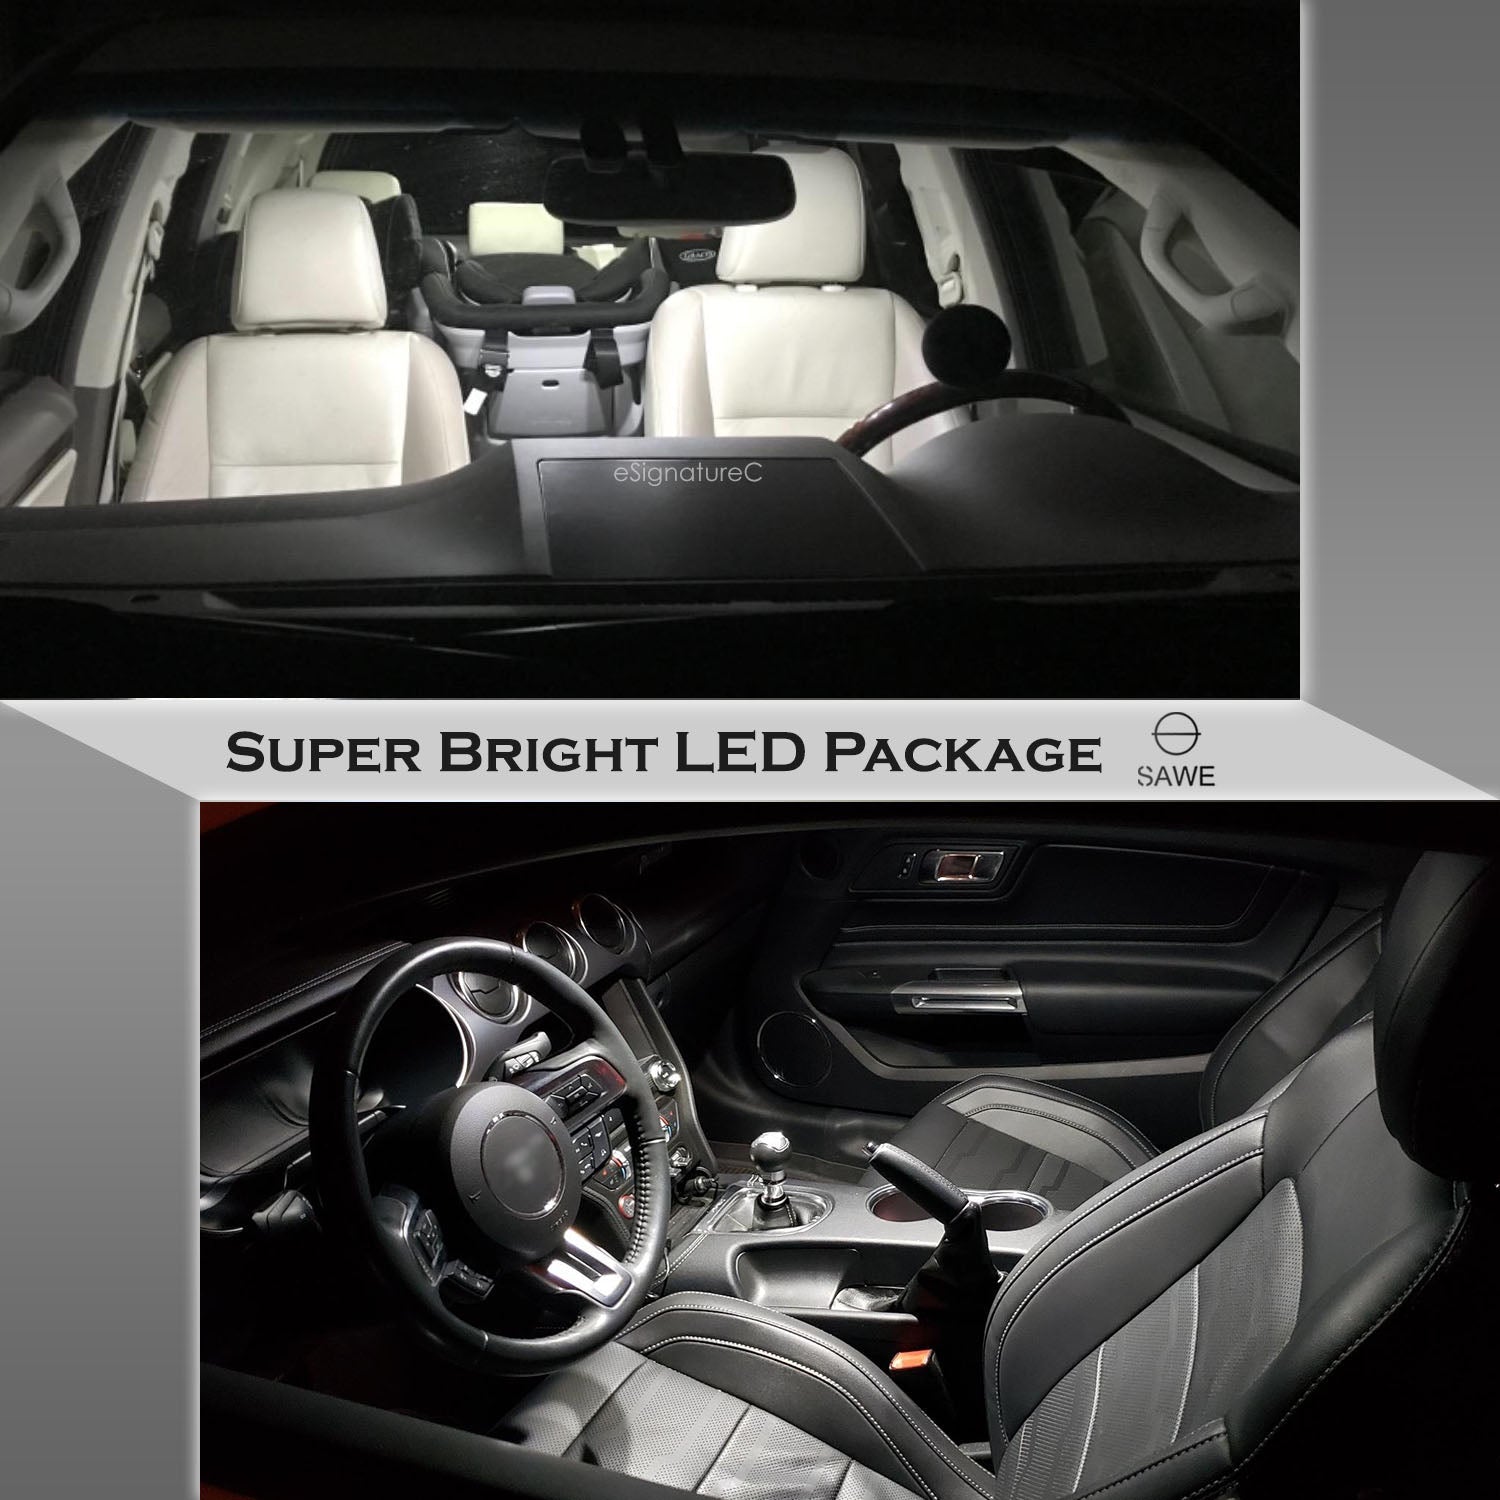 For Honda CRV CR-V Interior LED Lights - Dome & Map Lights Package Kit for 2013 - 2022 - White